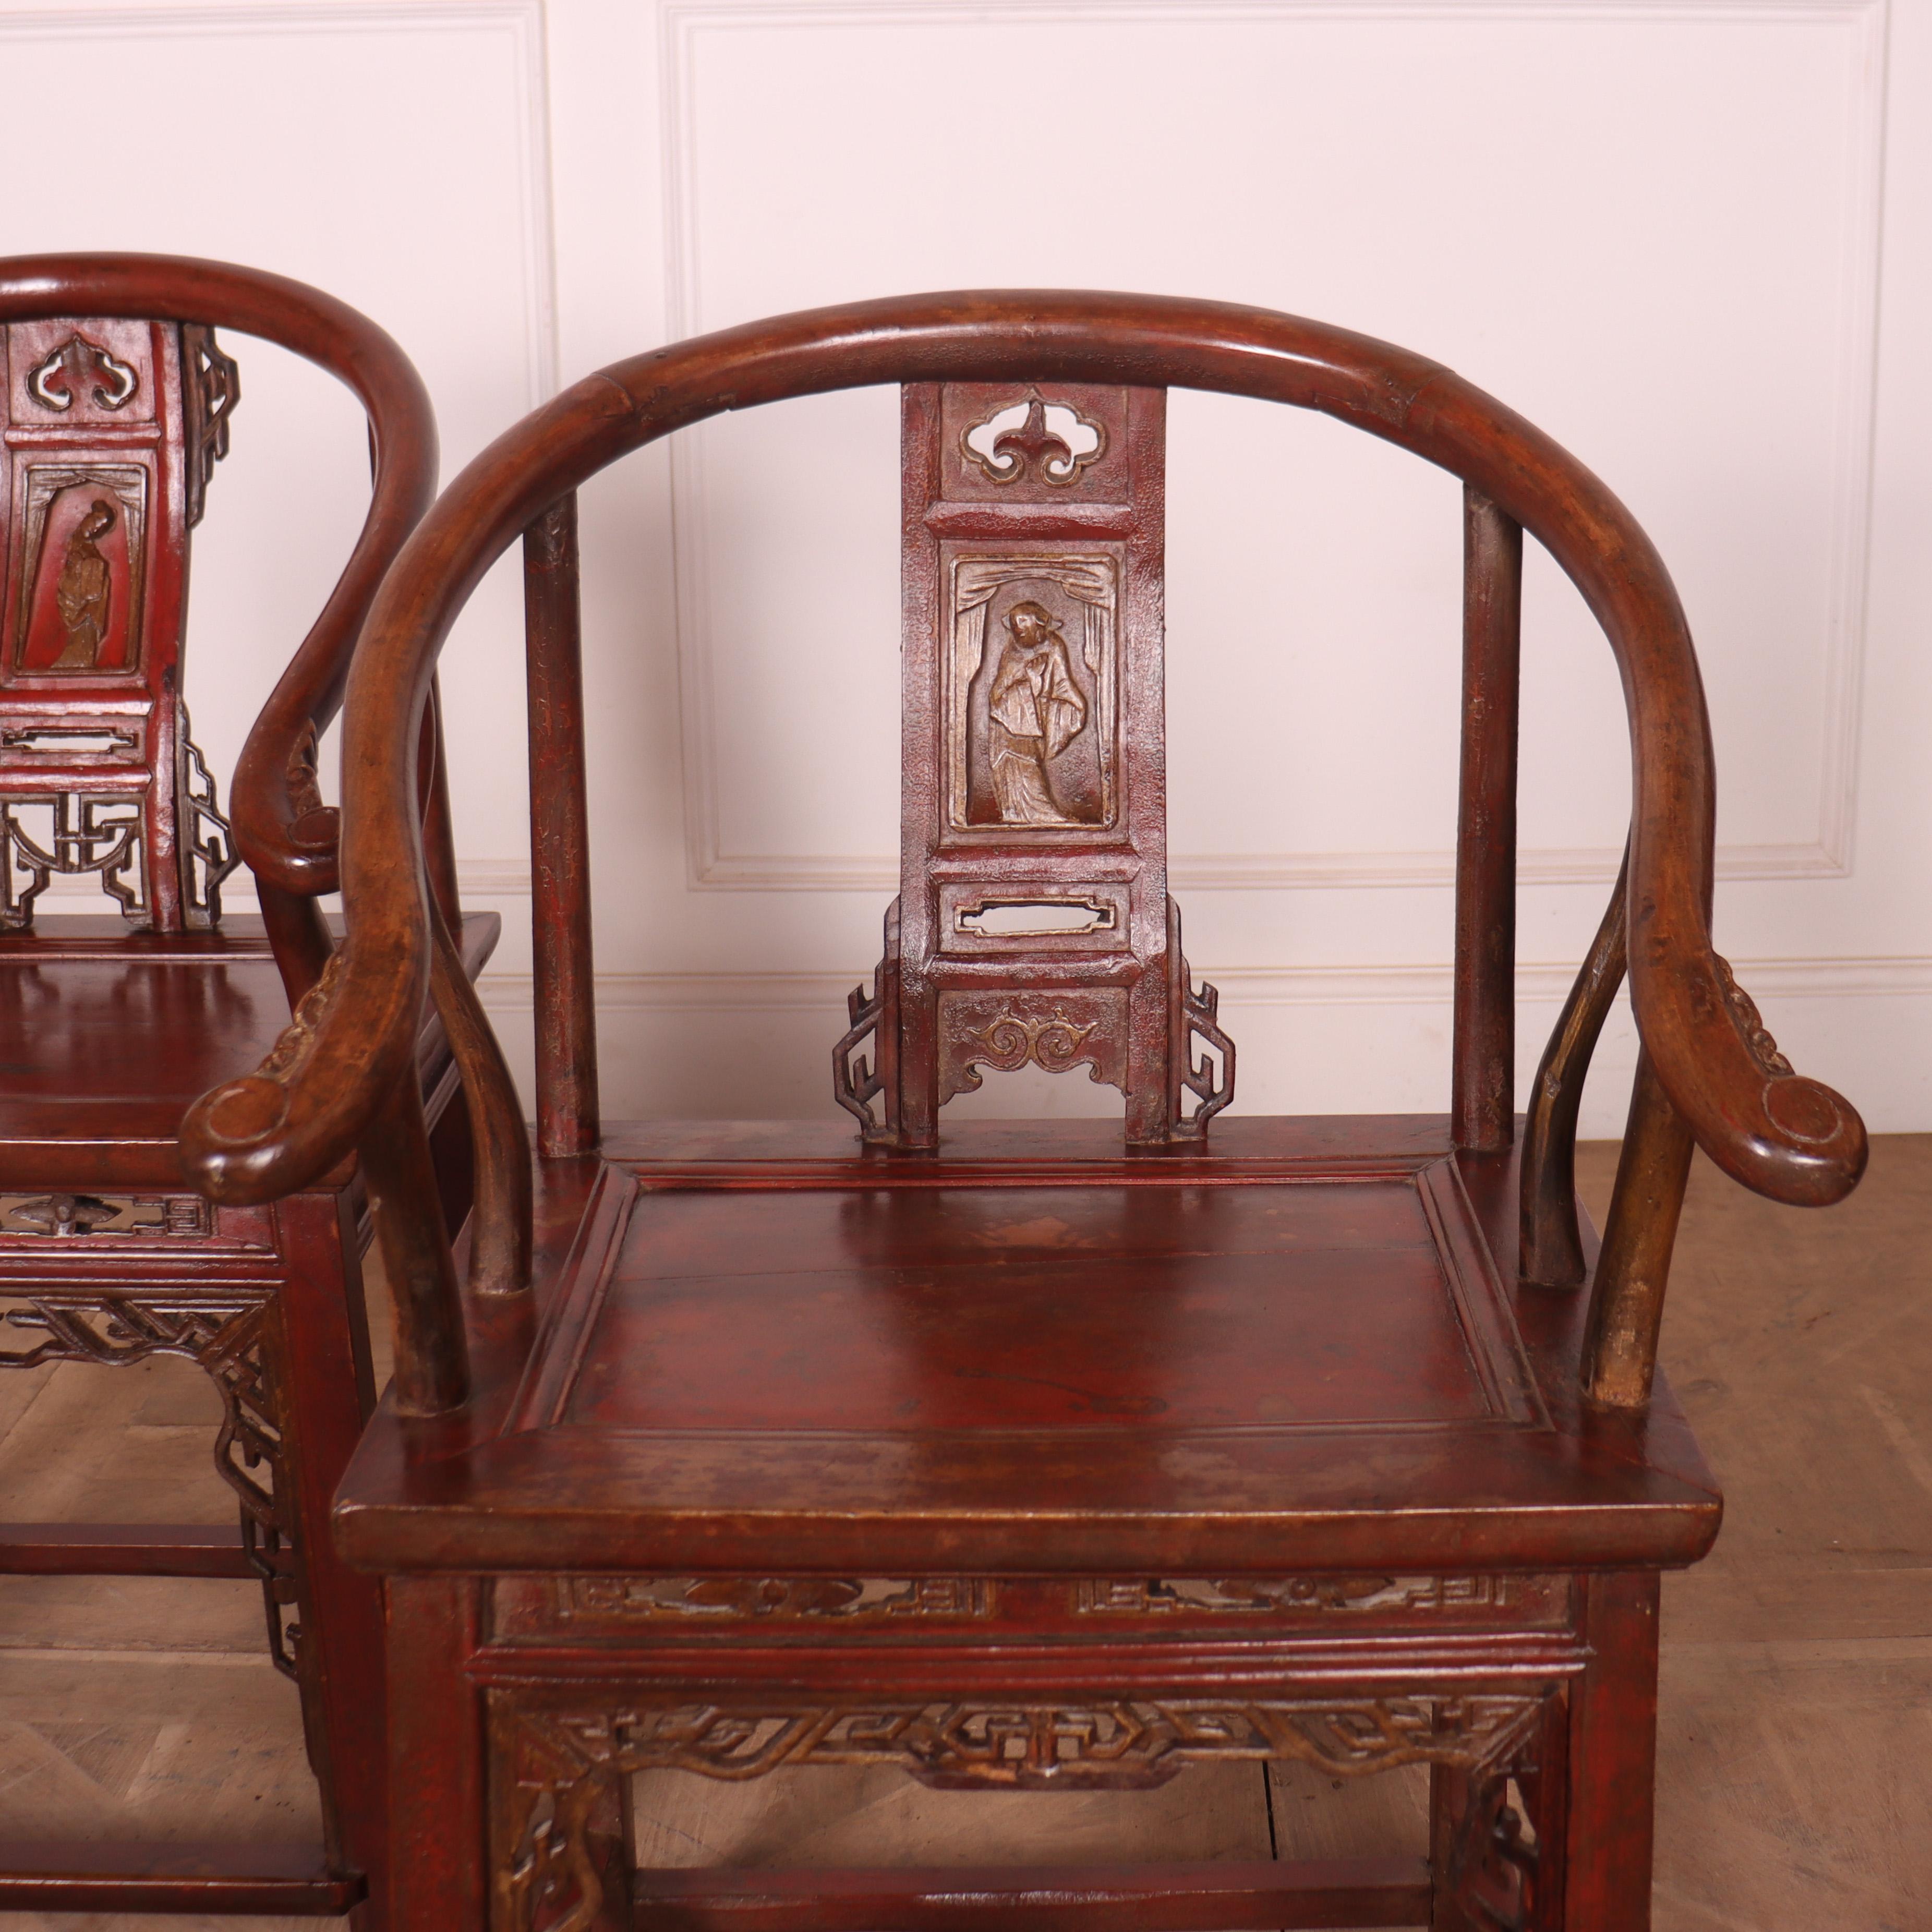 Paar chinesische Ulmenarmcharis aus dem 19. Jahrhundert mit Originallackierung. 1890

Sitzhöhe - 19.5